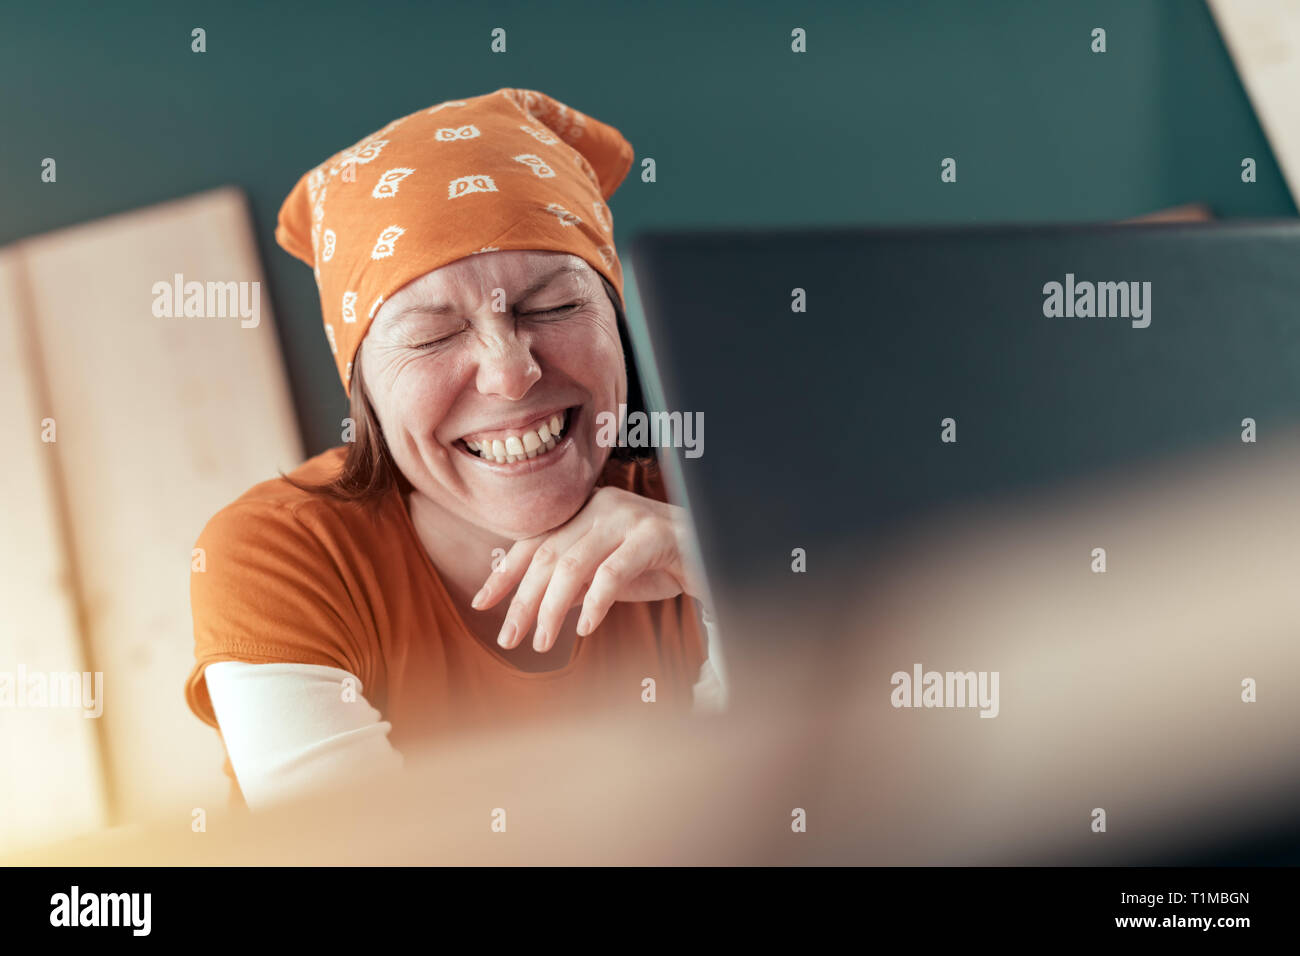 Happy smiling female carpenter lors de chat en ligne avec le client sur un ordinateur portable dans l'atelier de menuiserie Banque D'Images